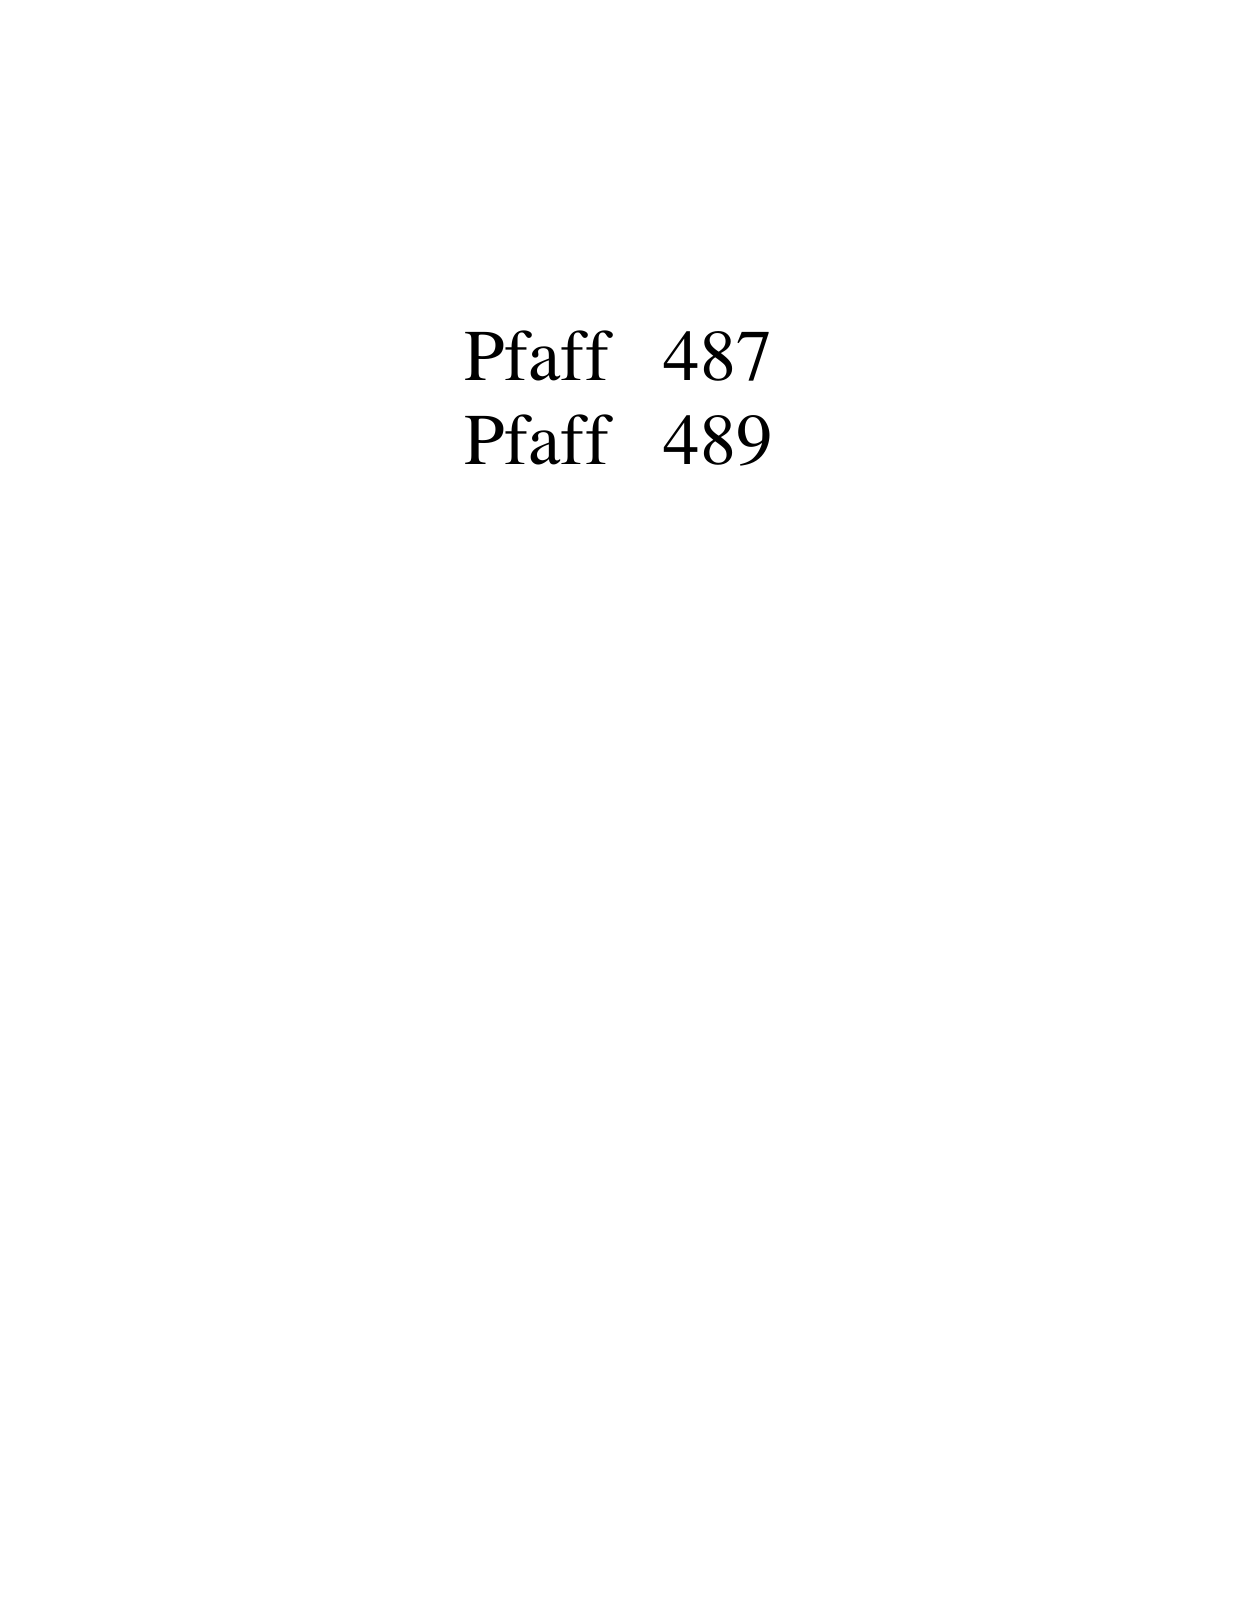 PFAFF 487, 489 Parts List